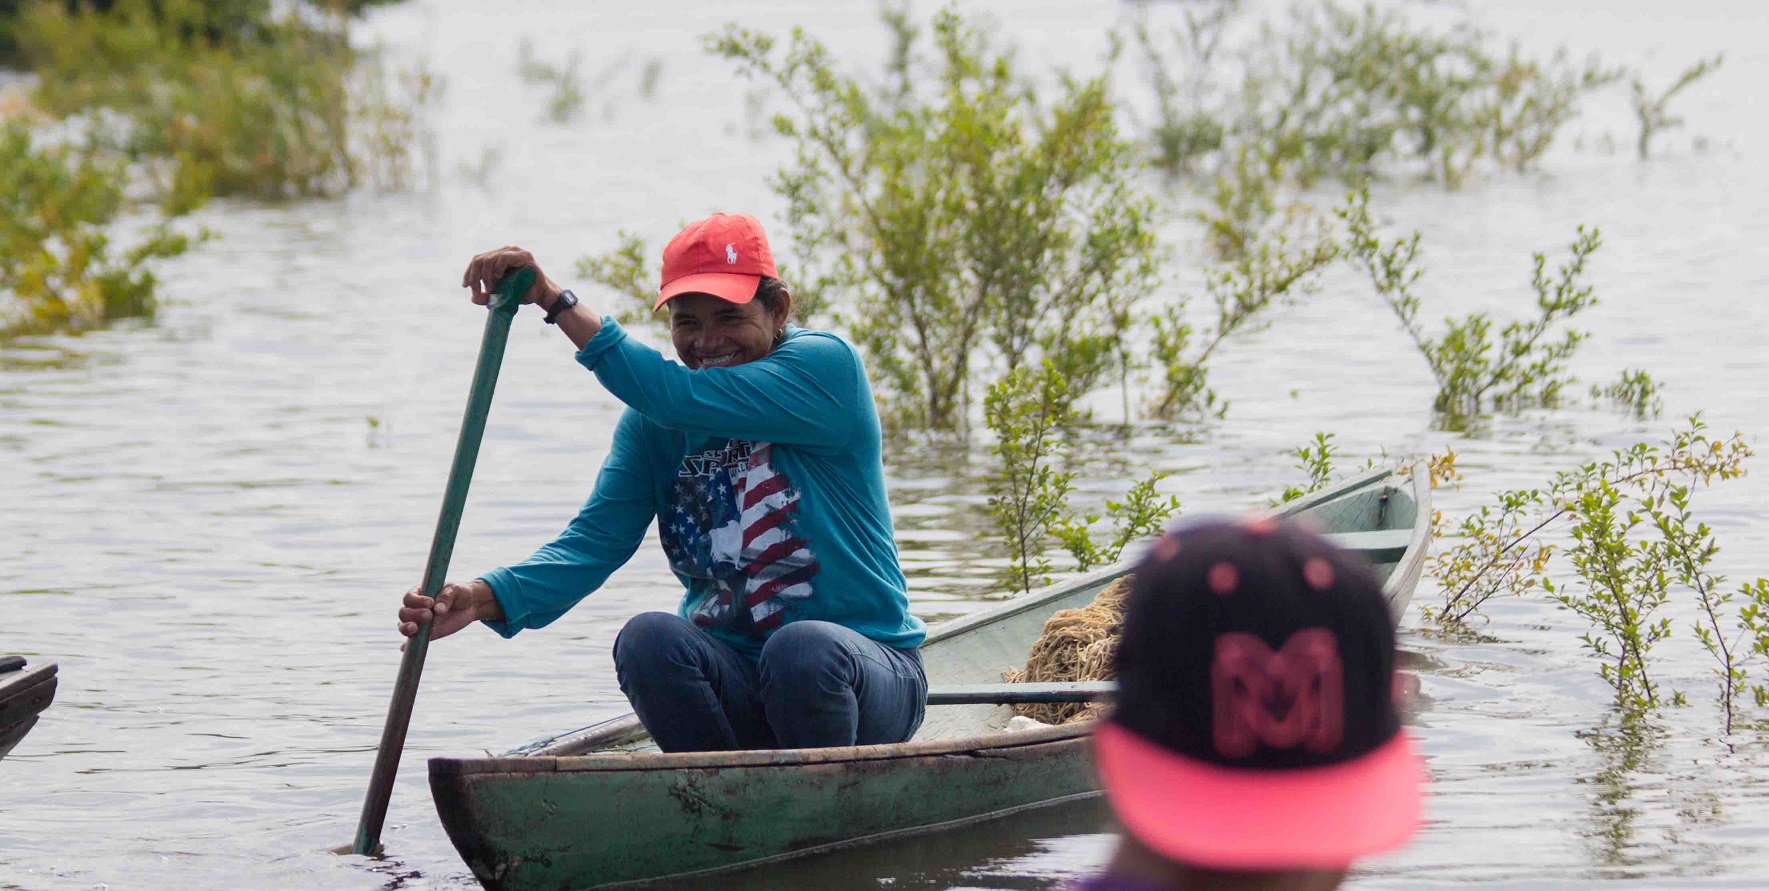 Manejo na Amazônia permite maior empoderamento de mulheres na pesca, atestam pesquisadoras